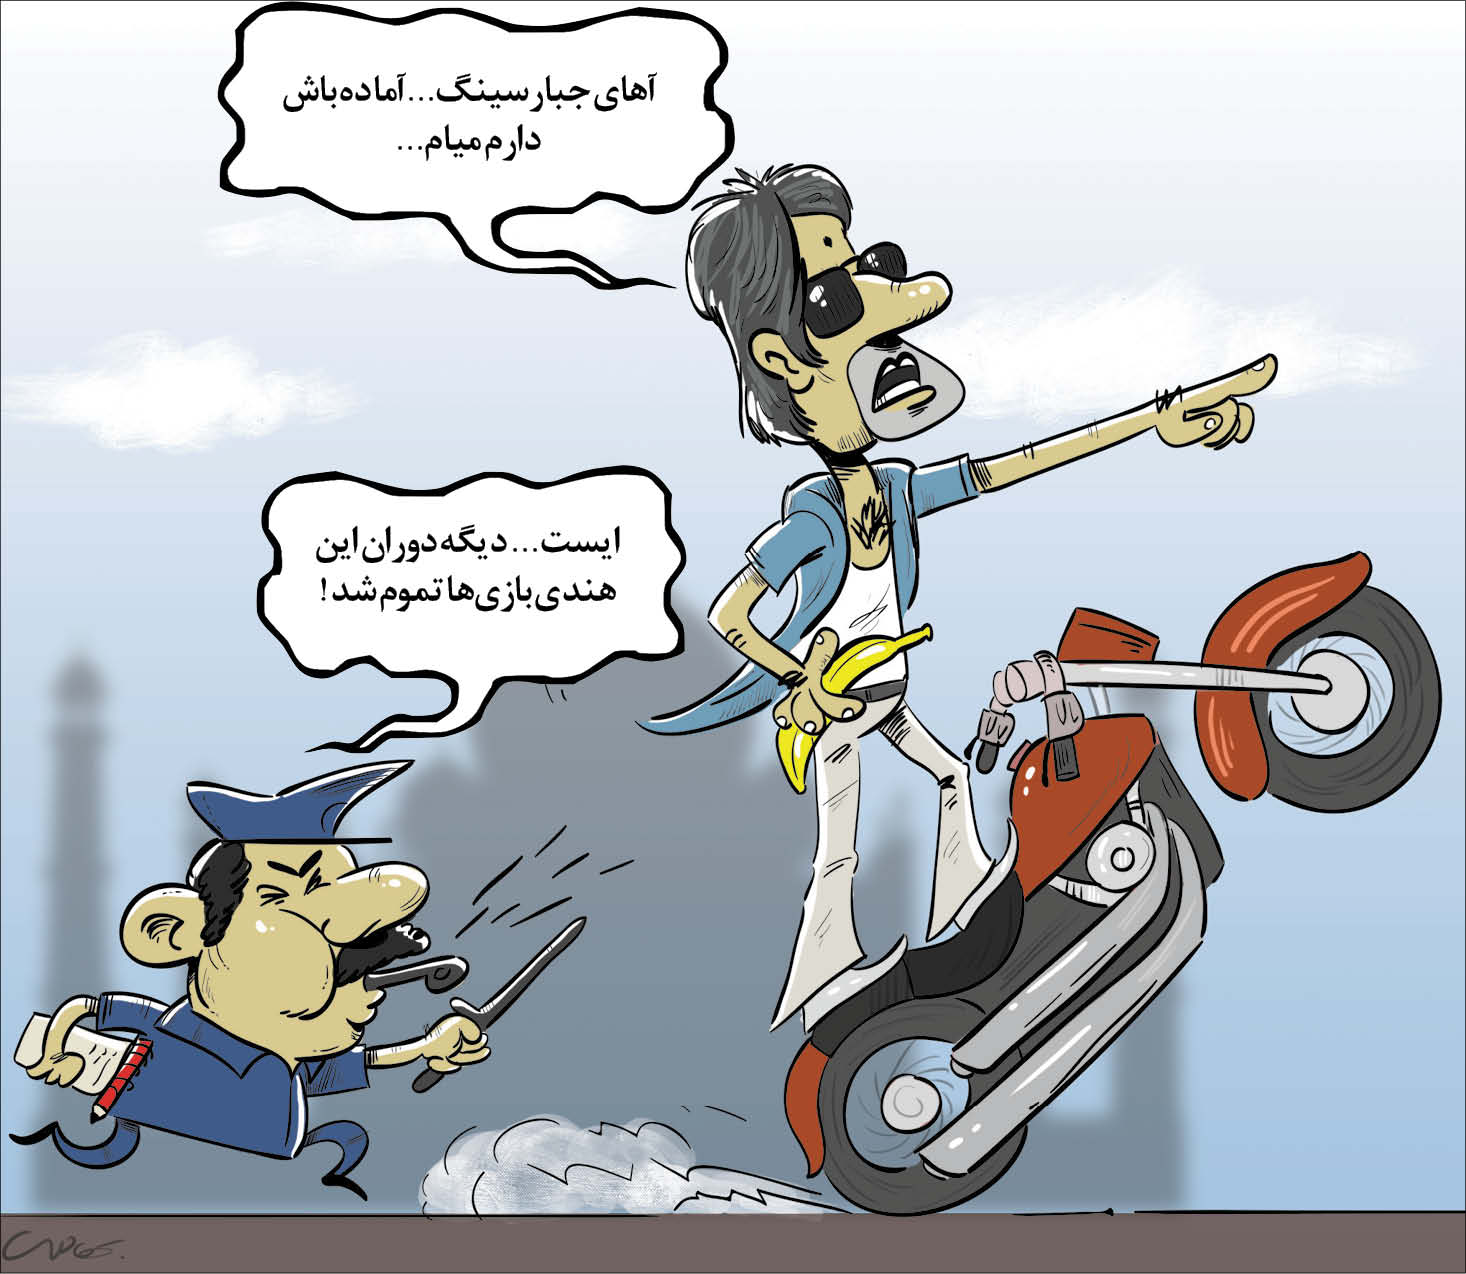  کارتونیست: محمد بهادری